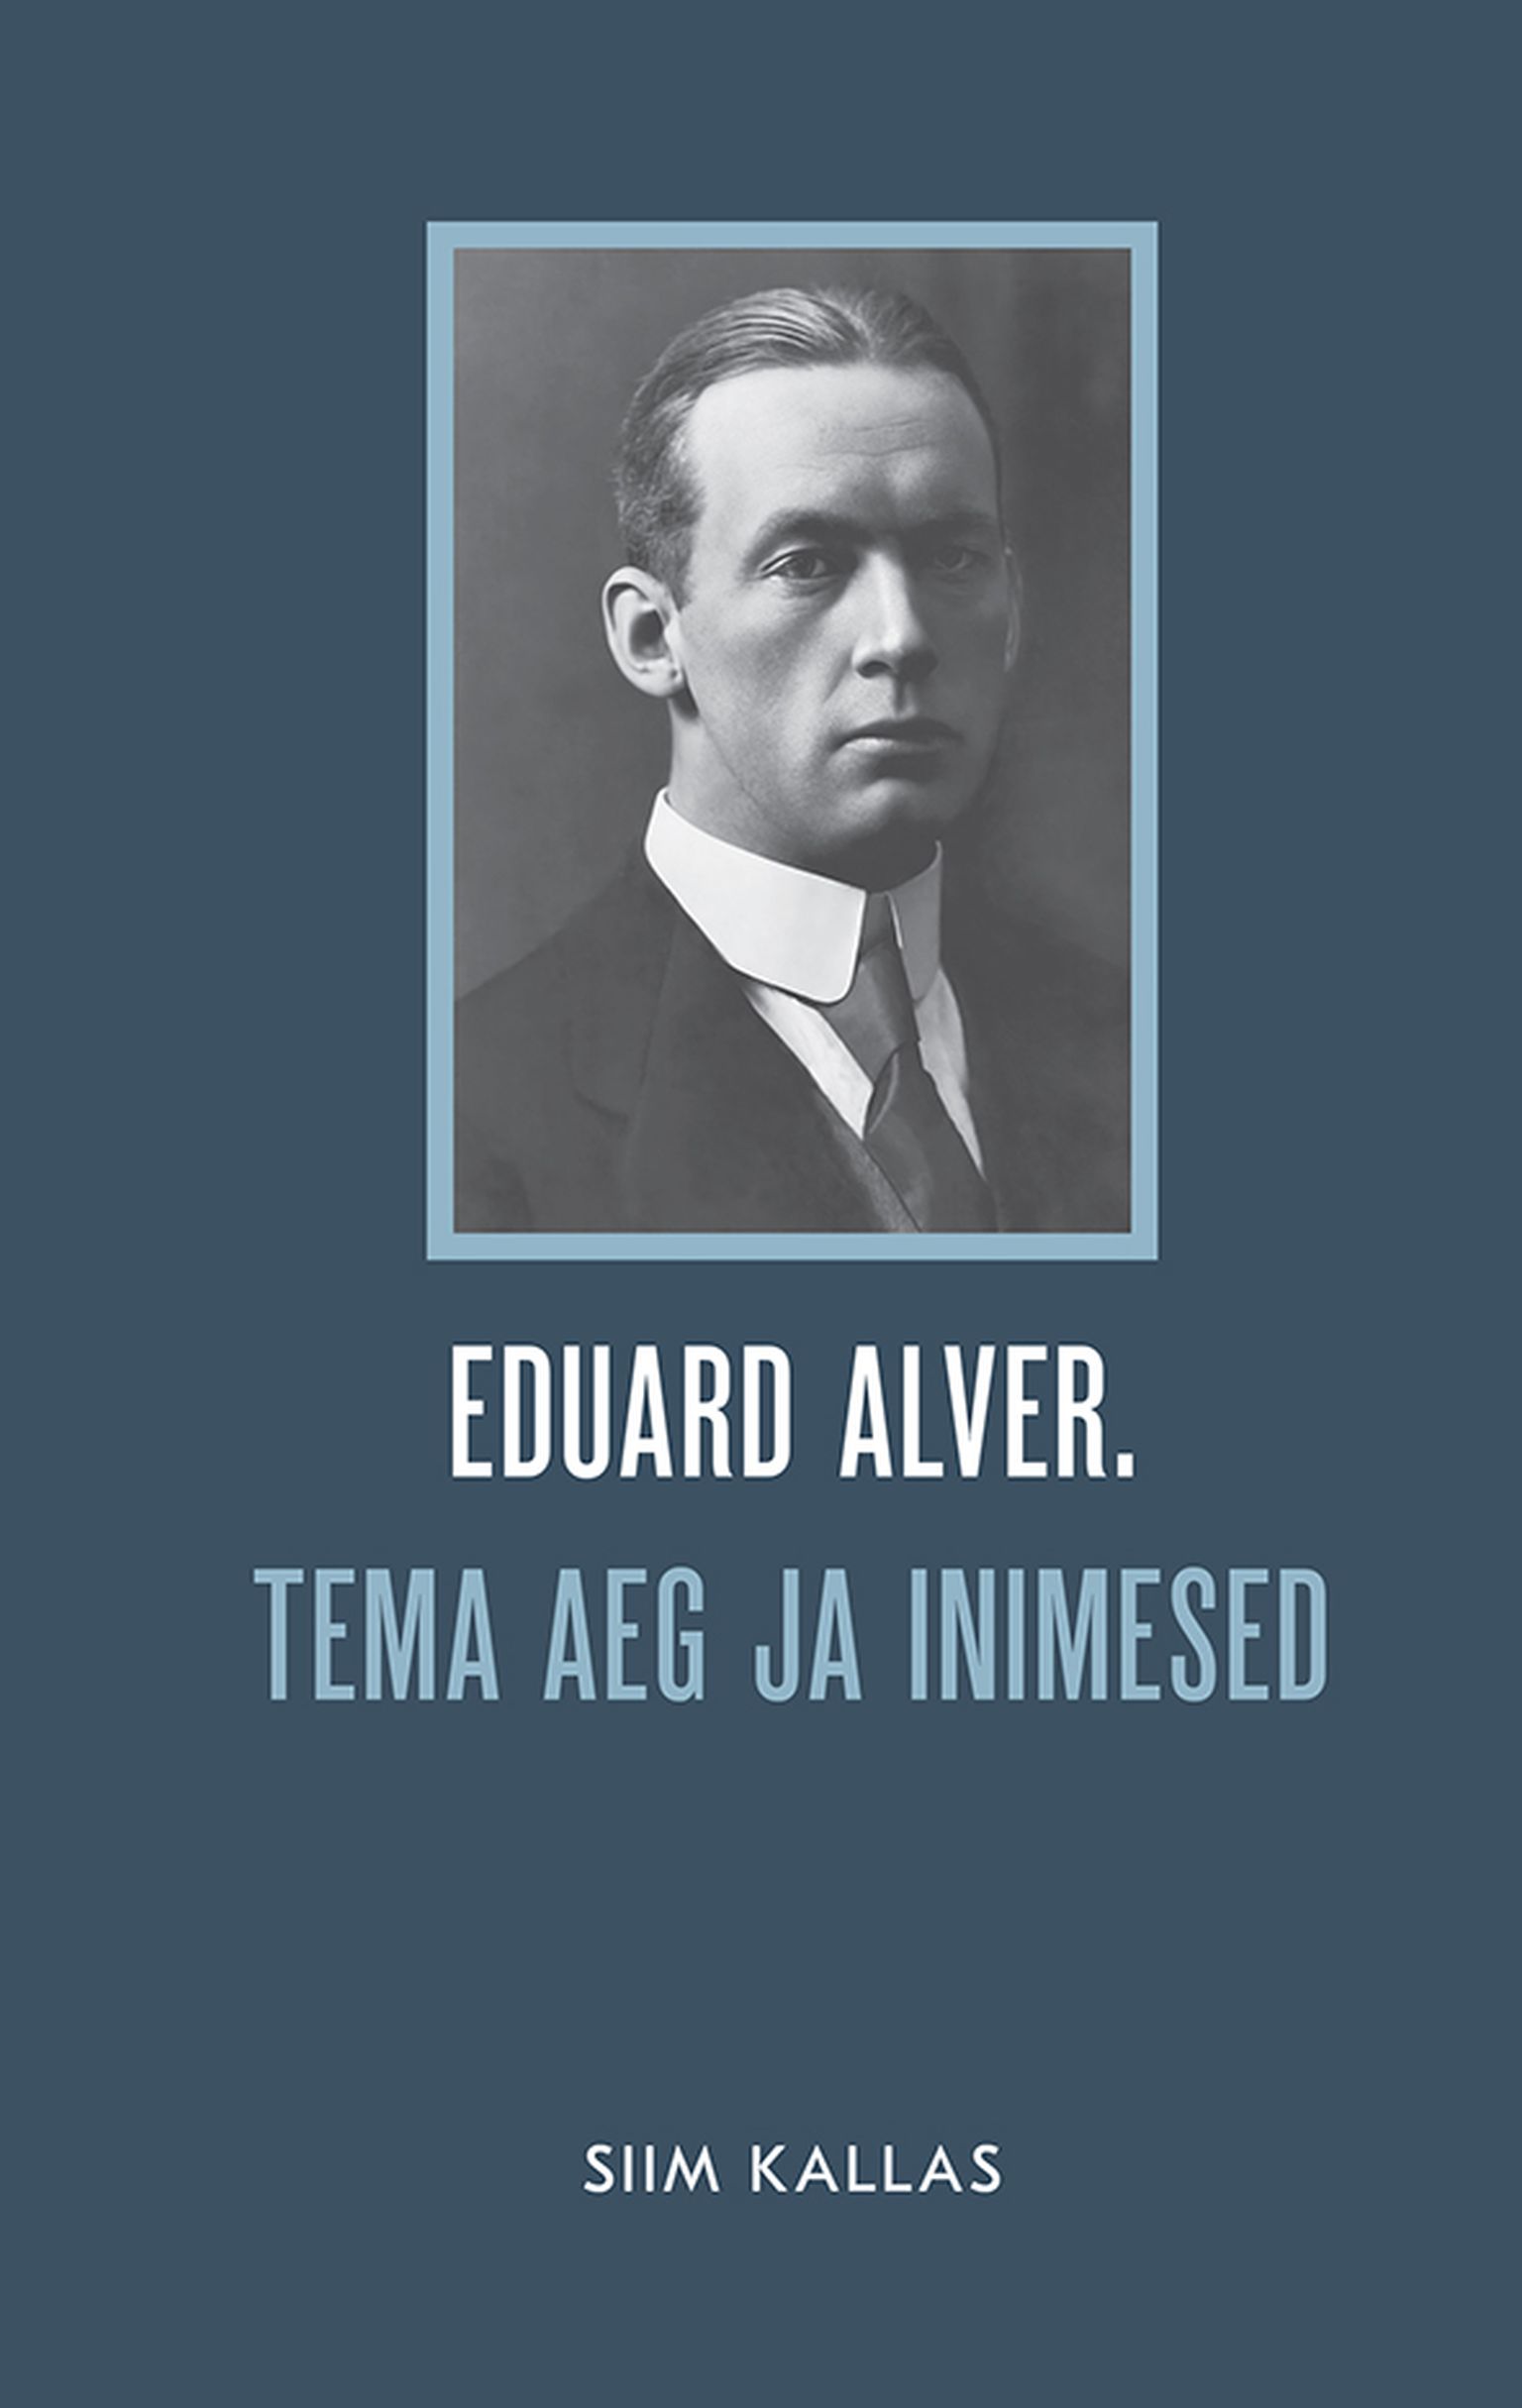 Siim Kallas, «Eduard Alver. Tema aeg ja inimesed».